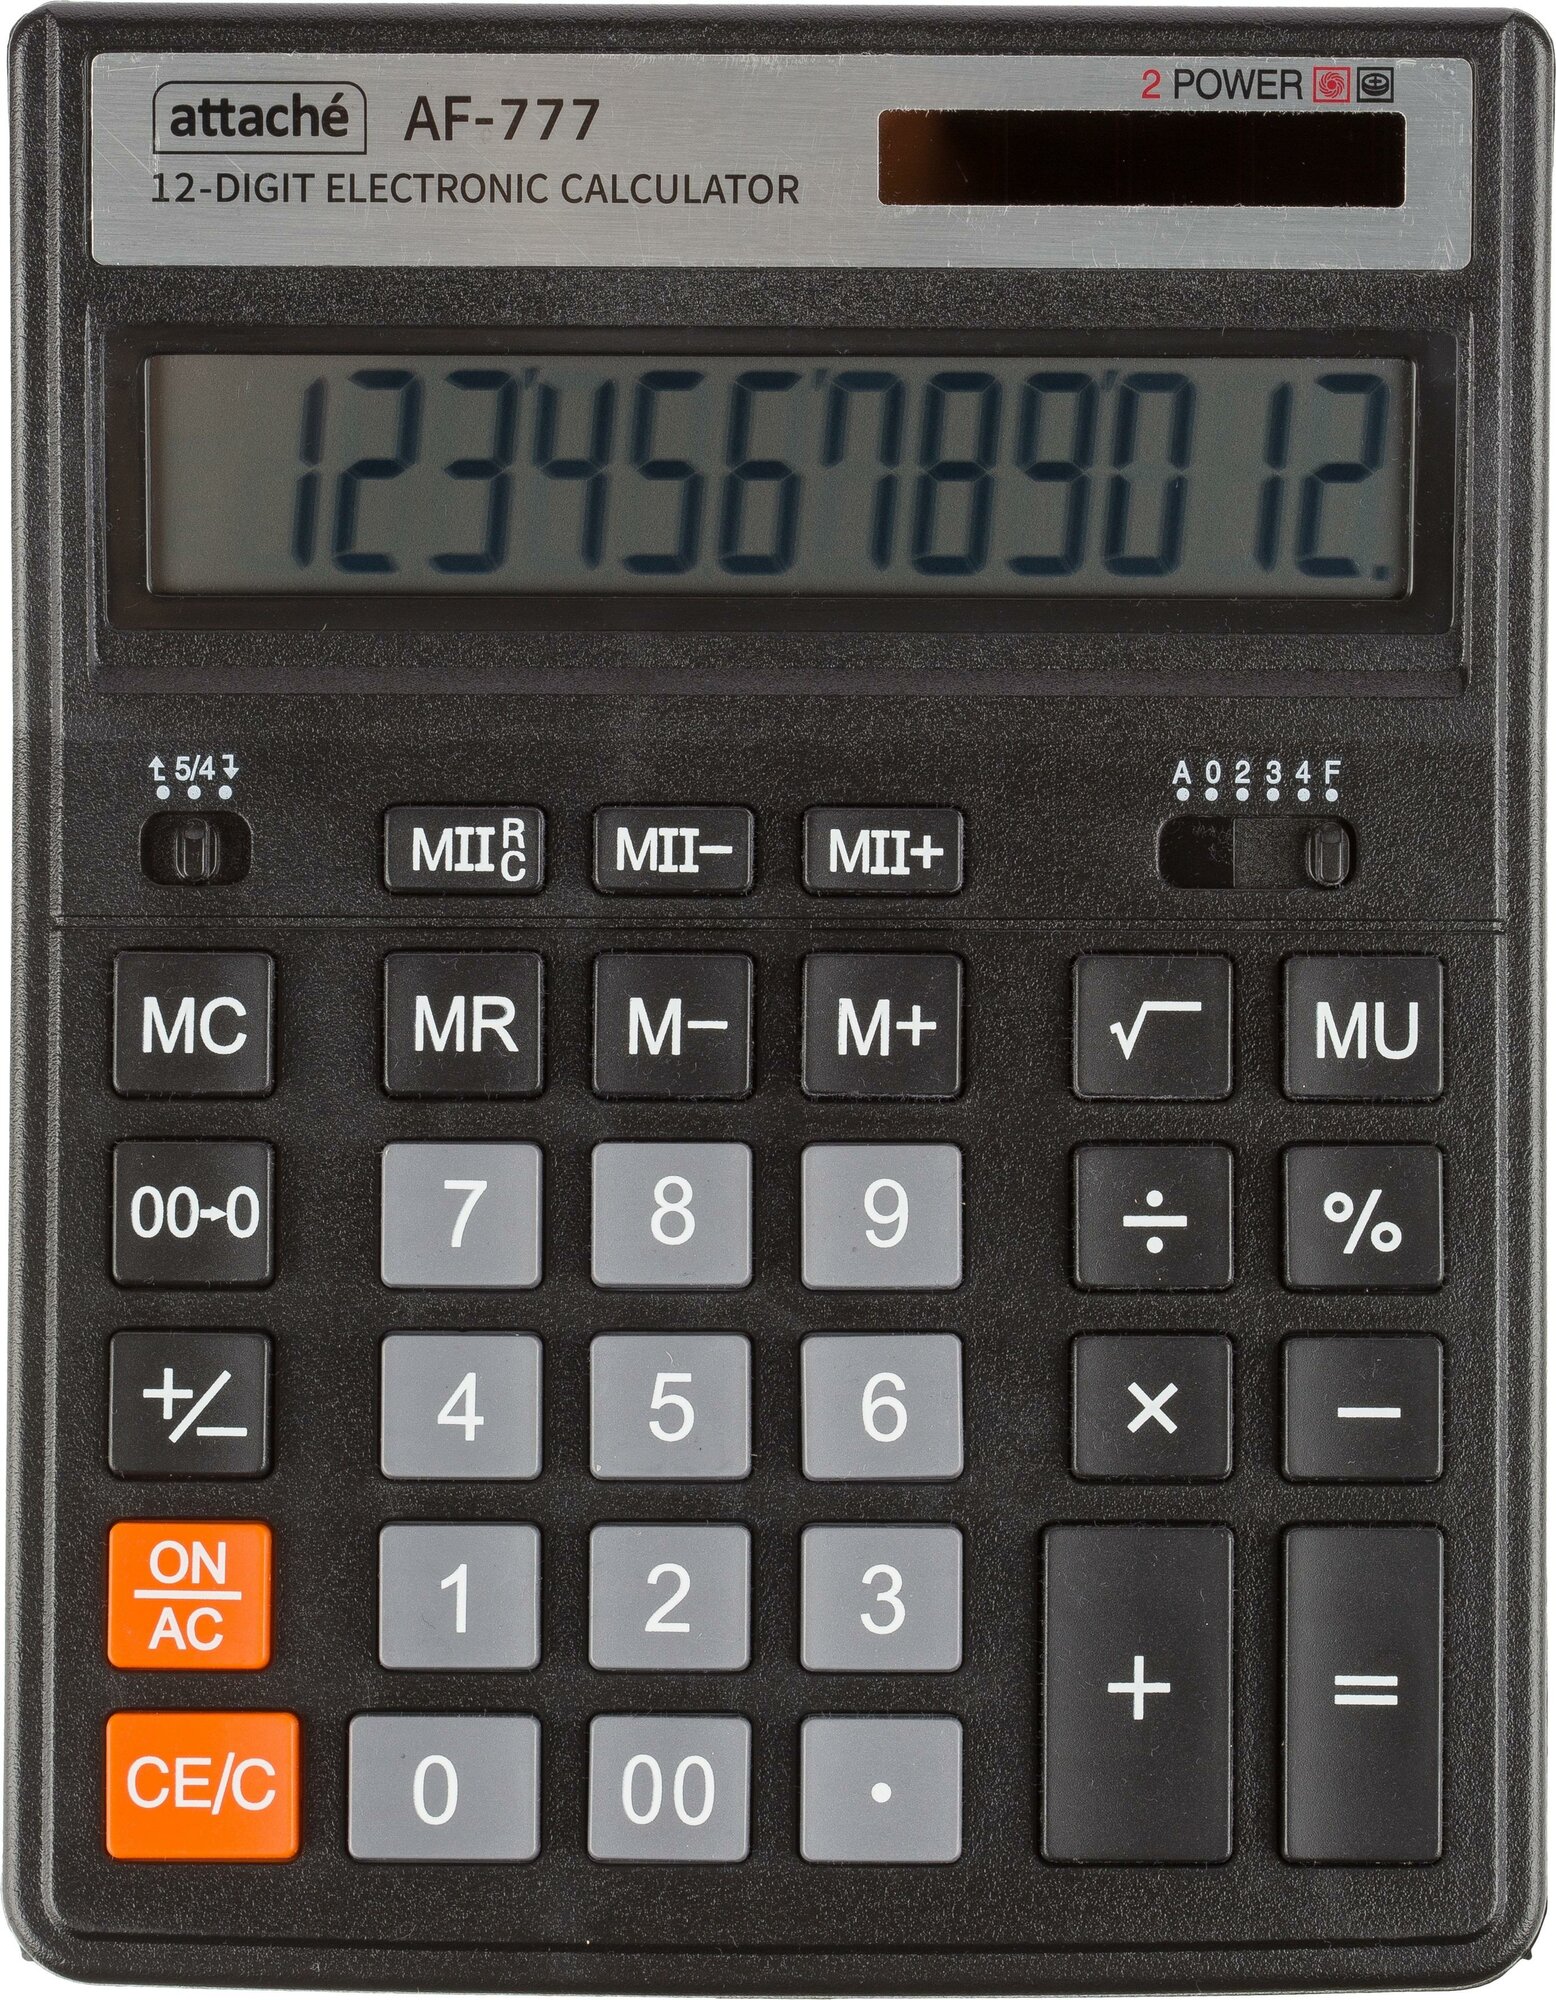 Калькулятор настоль. полноразм. Attache AF-77712р дв. пит200x155мм черный